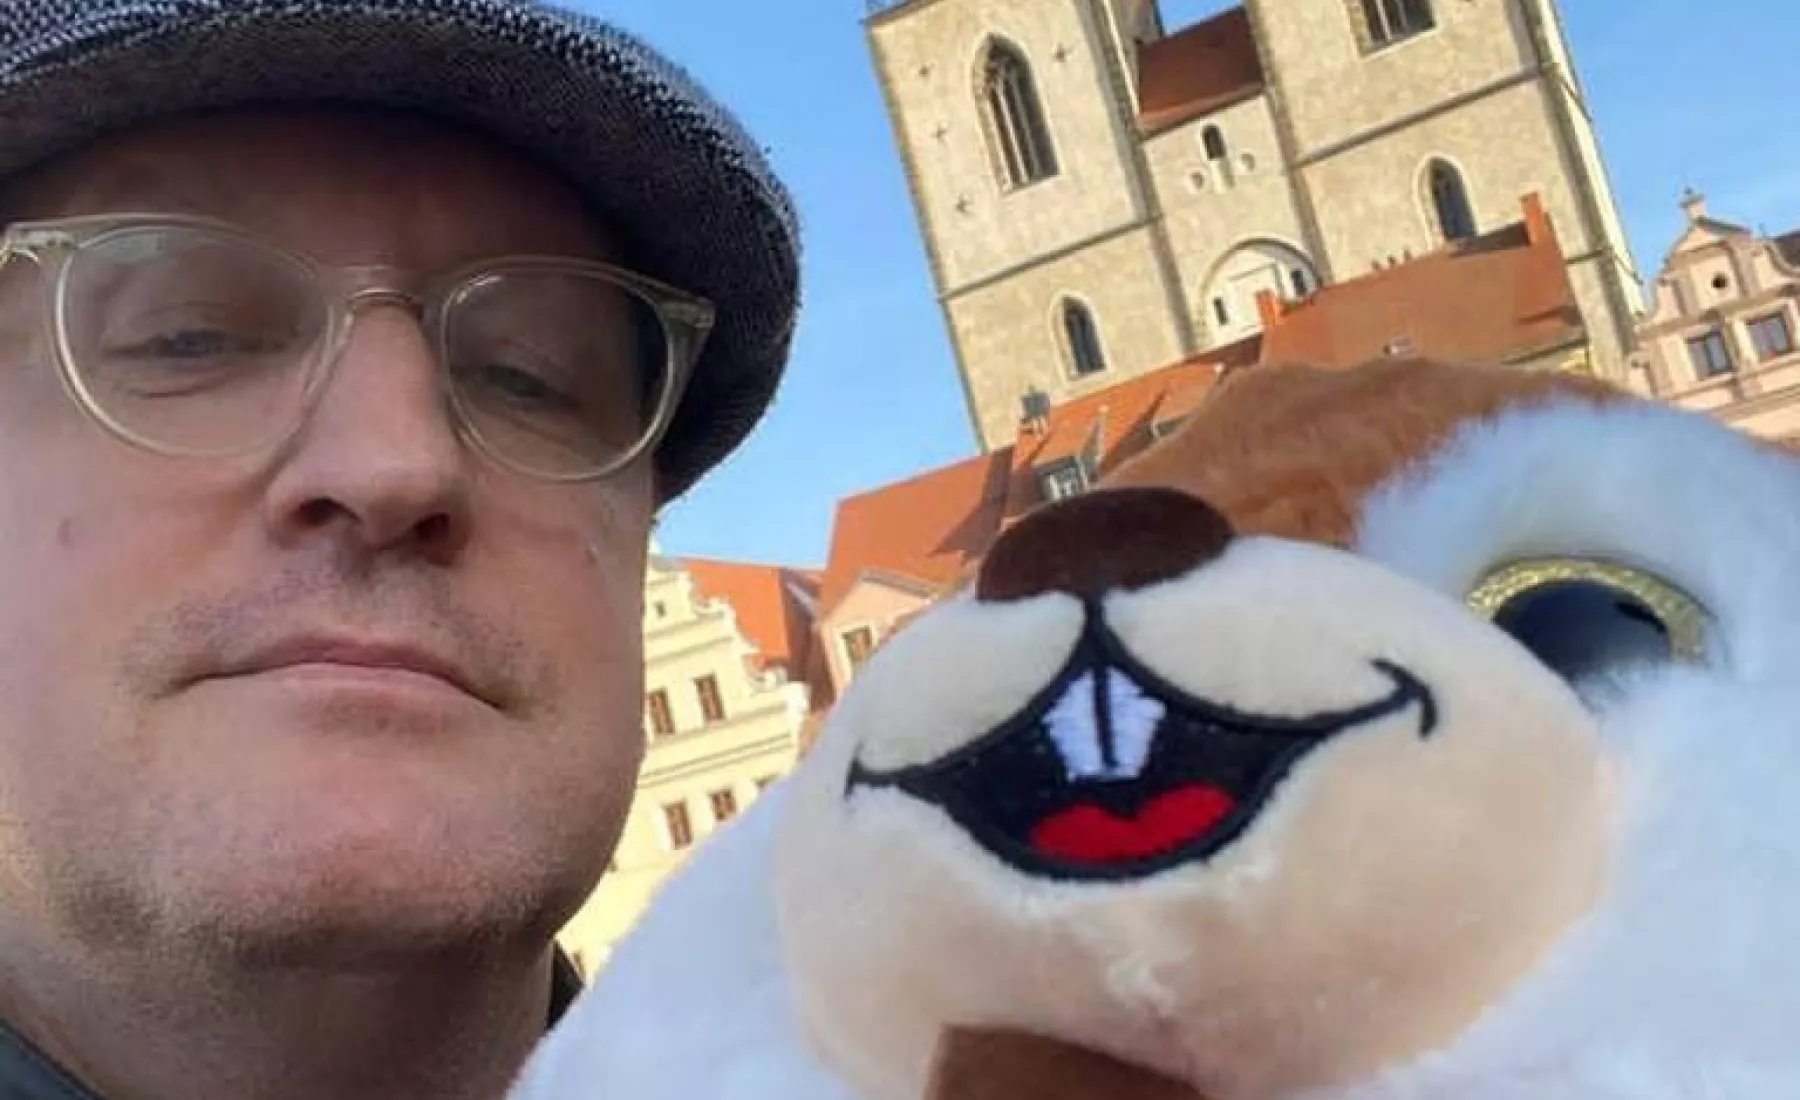 Wittenbergs OB Torsten Zugehör "findet" Eichhörnchen im Weihnachtsbaum